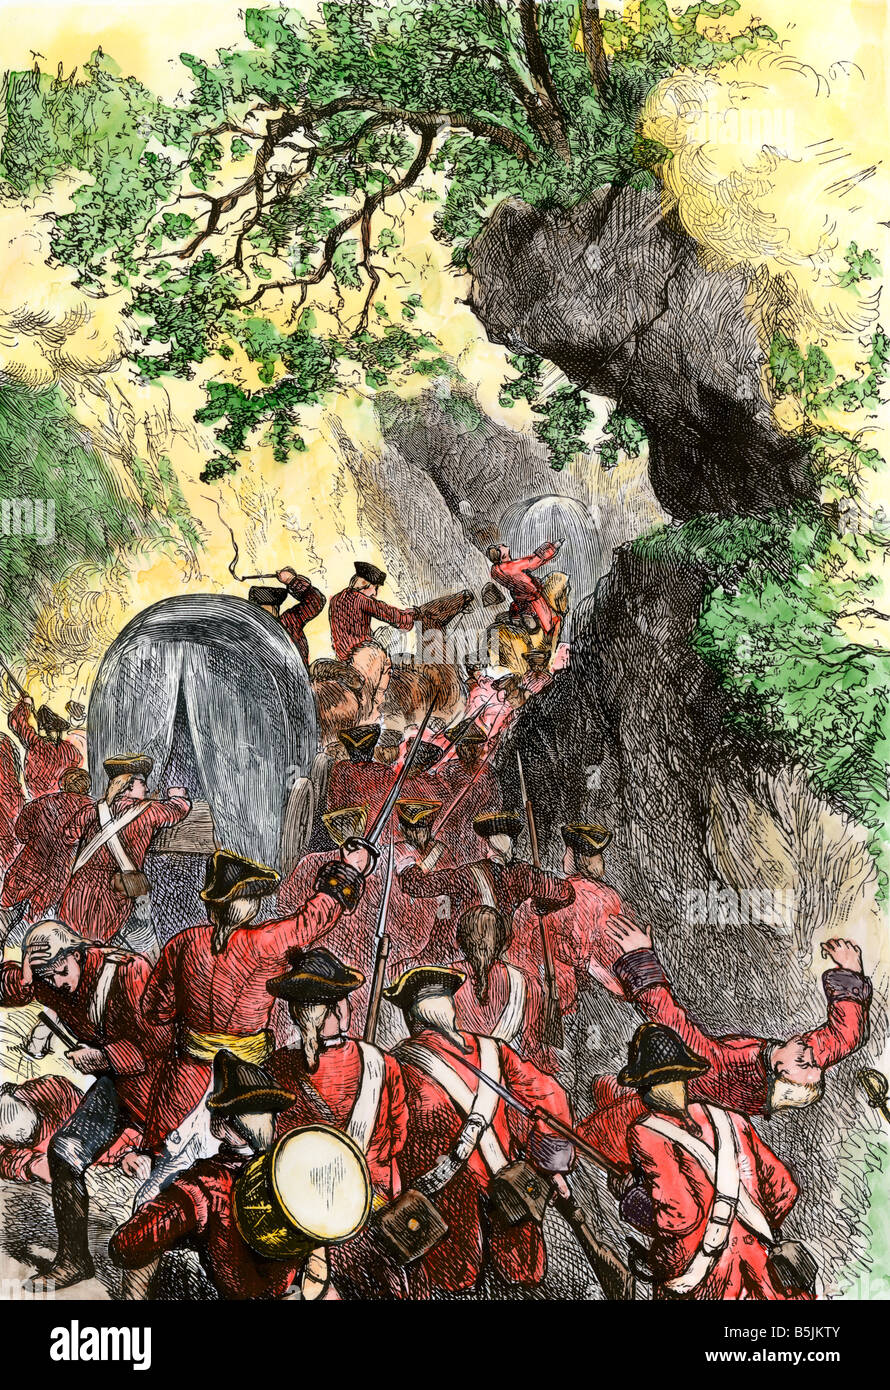 Braddock forces s dans une embuscade sur leur mars au fort Duquesne, guerre de 1755. À la main, gravure sur bois Banque D'Images